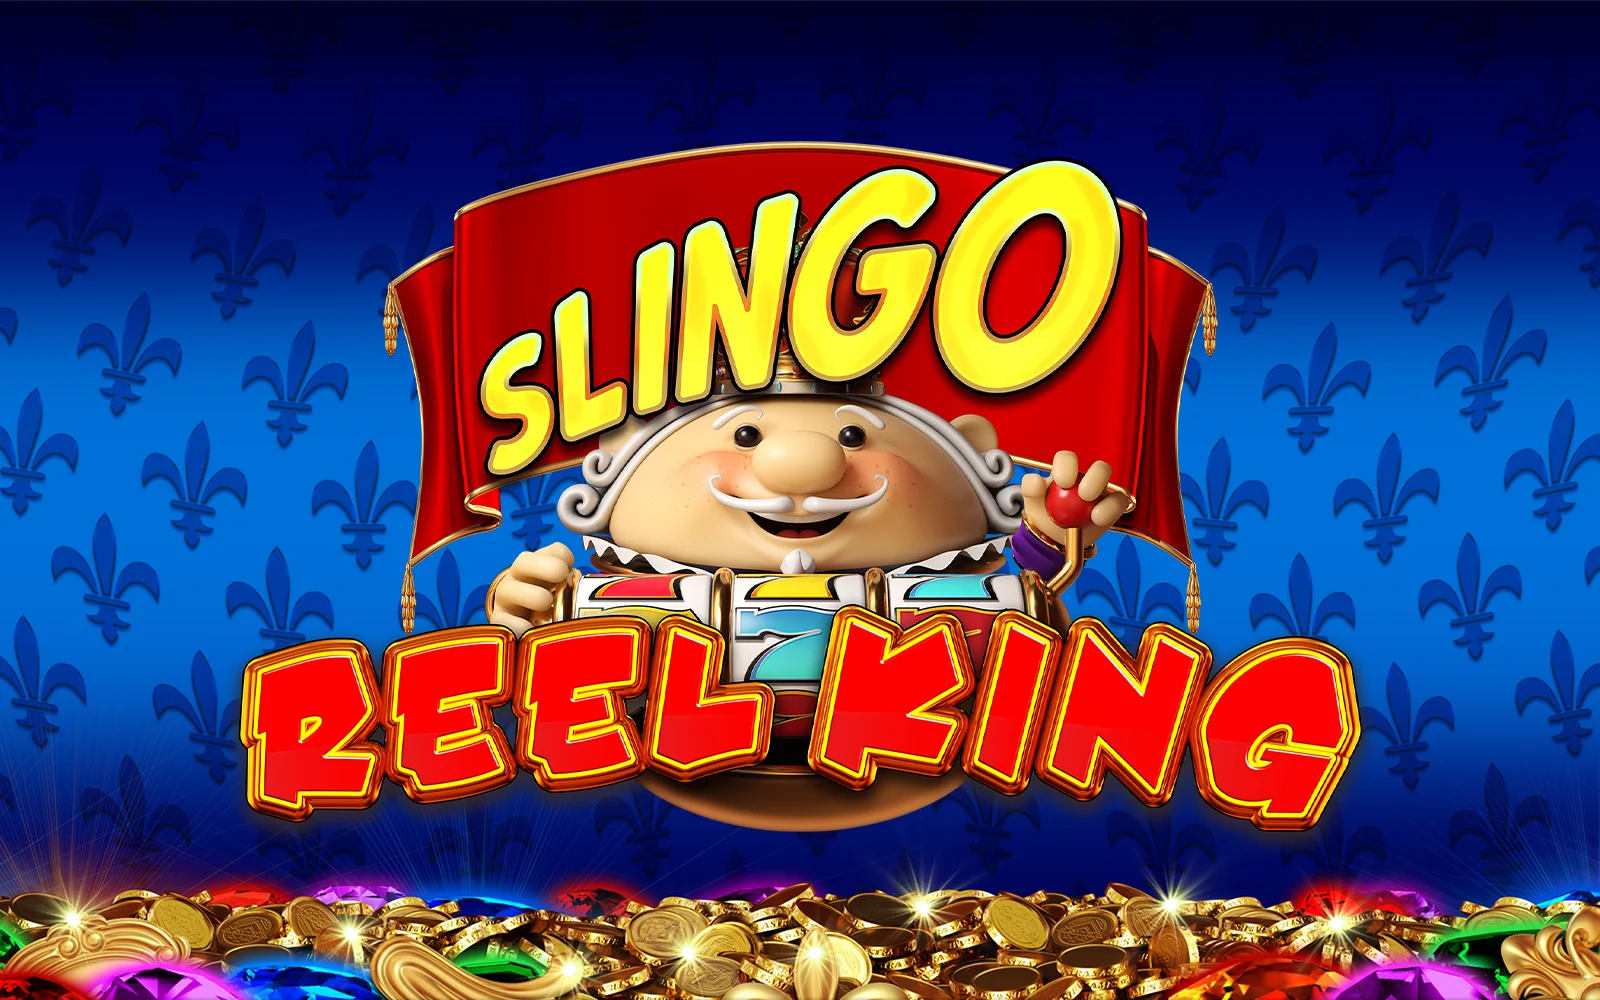 Spil Slingo Reel King på Starcasino.be online kasino
